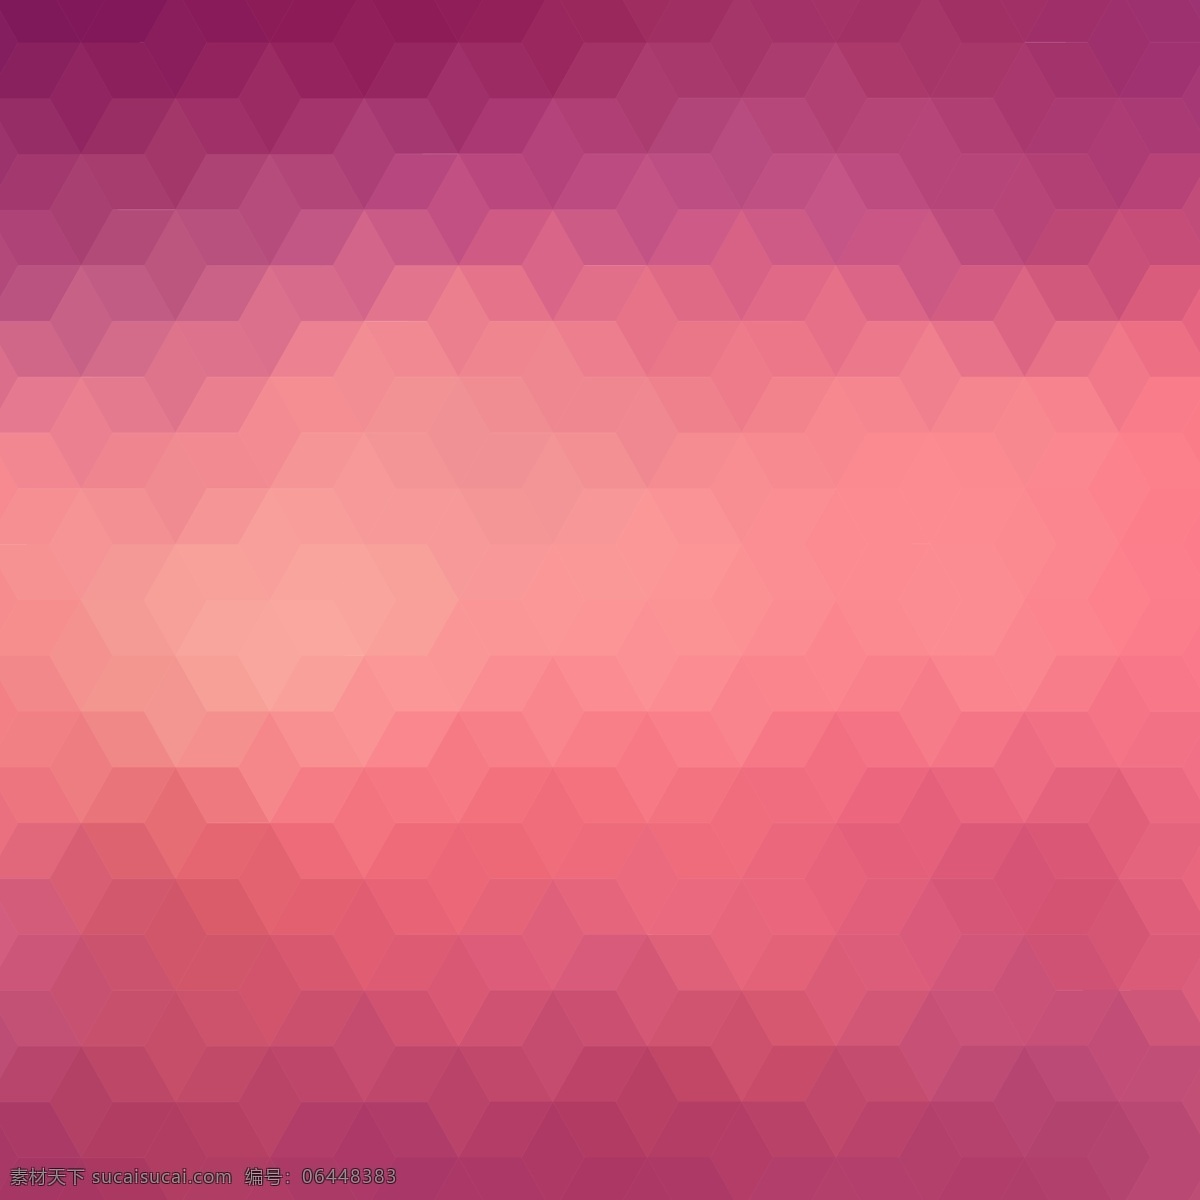 红色 紫色 色调 几何 背 背景 摘要 抽象 三角 钻石 红 多边形 壁纸 矢量 三角形 渐变 影响